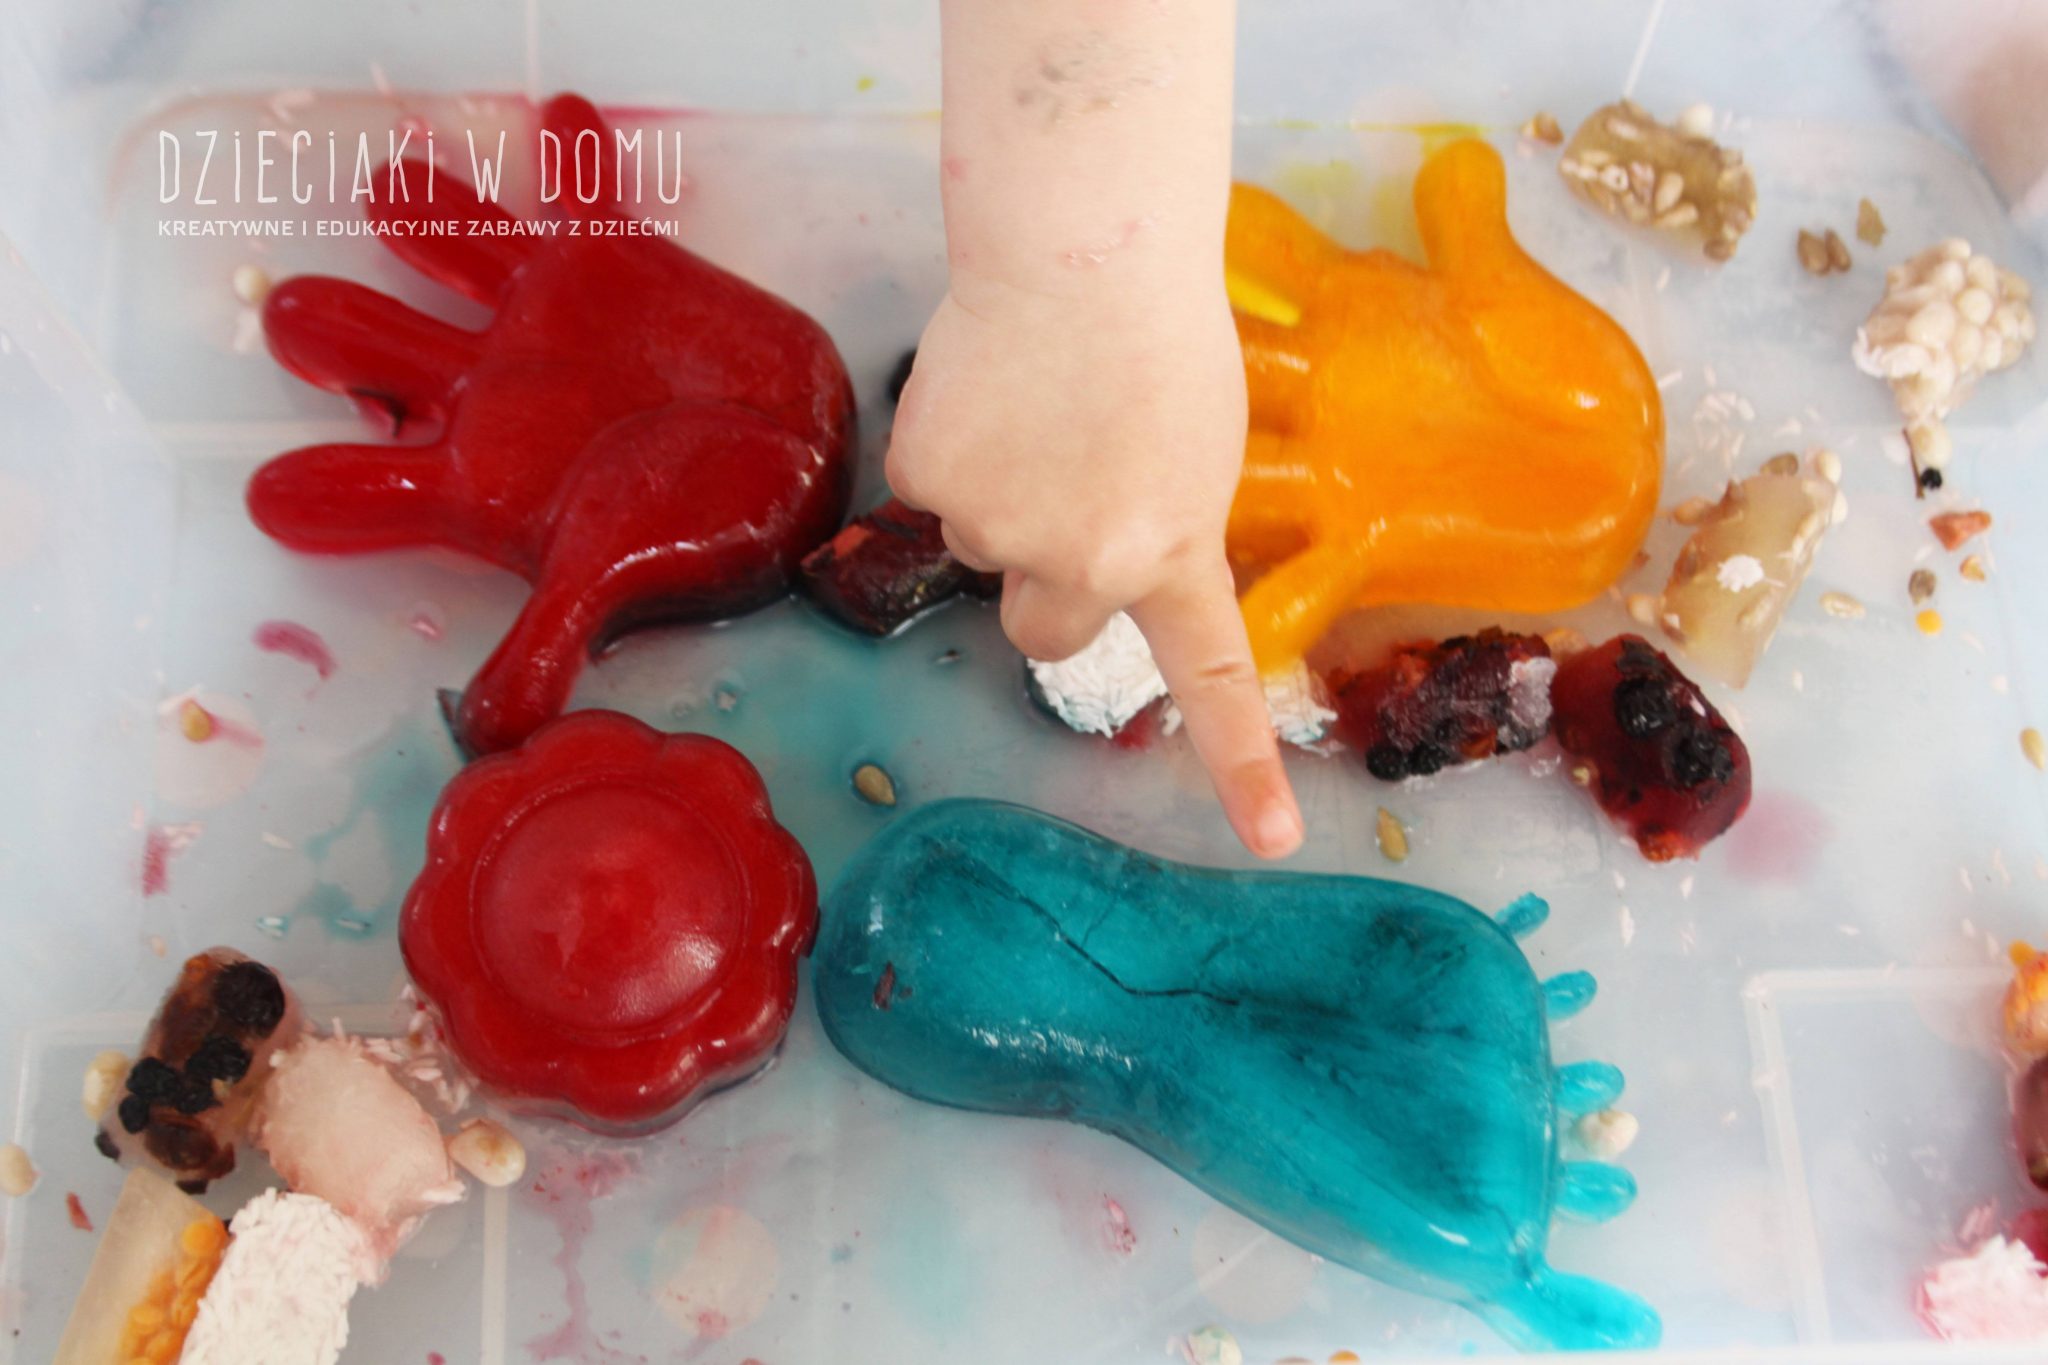 Lód pełen kolorów, smaku i faktur - zabawa sensoryczna dla maluchów